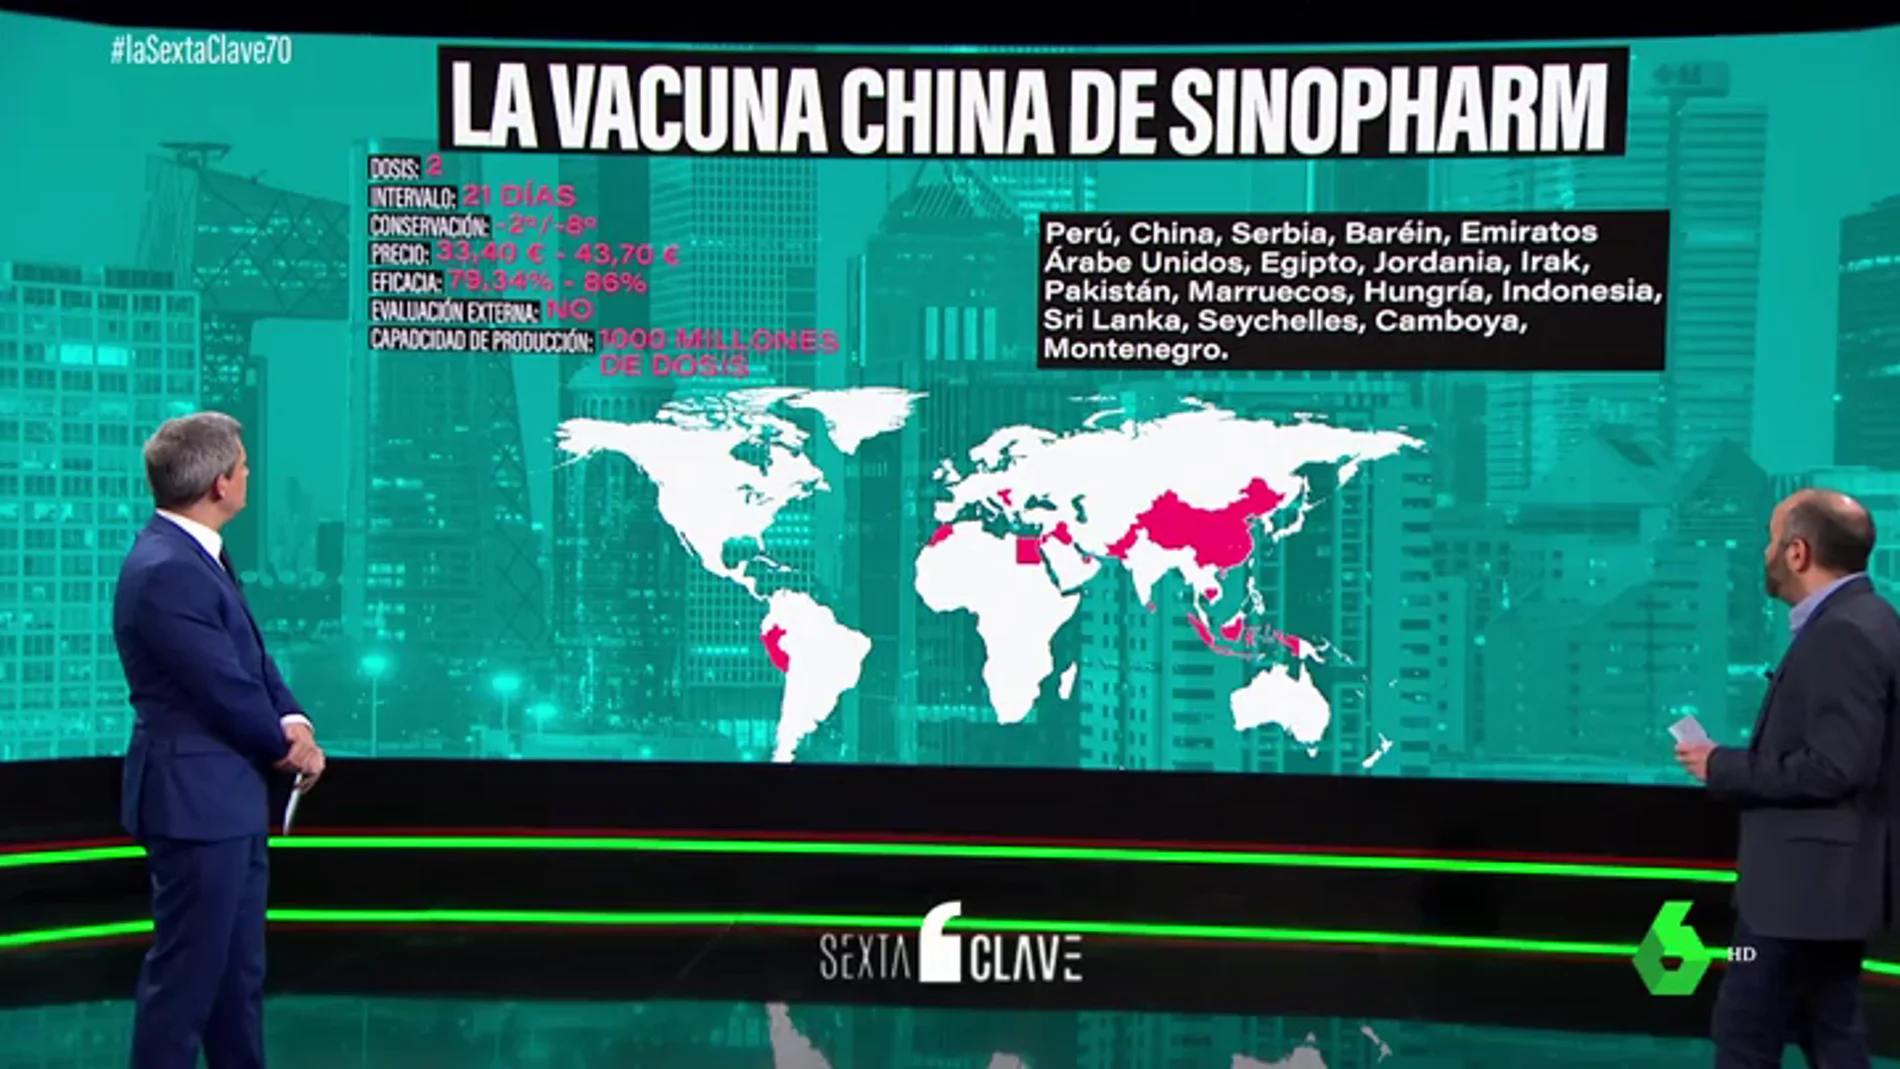 Las dudas en torno a las vacunas chinas: precios dispares según el país que las compre y eficacia real desconocida